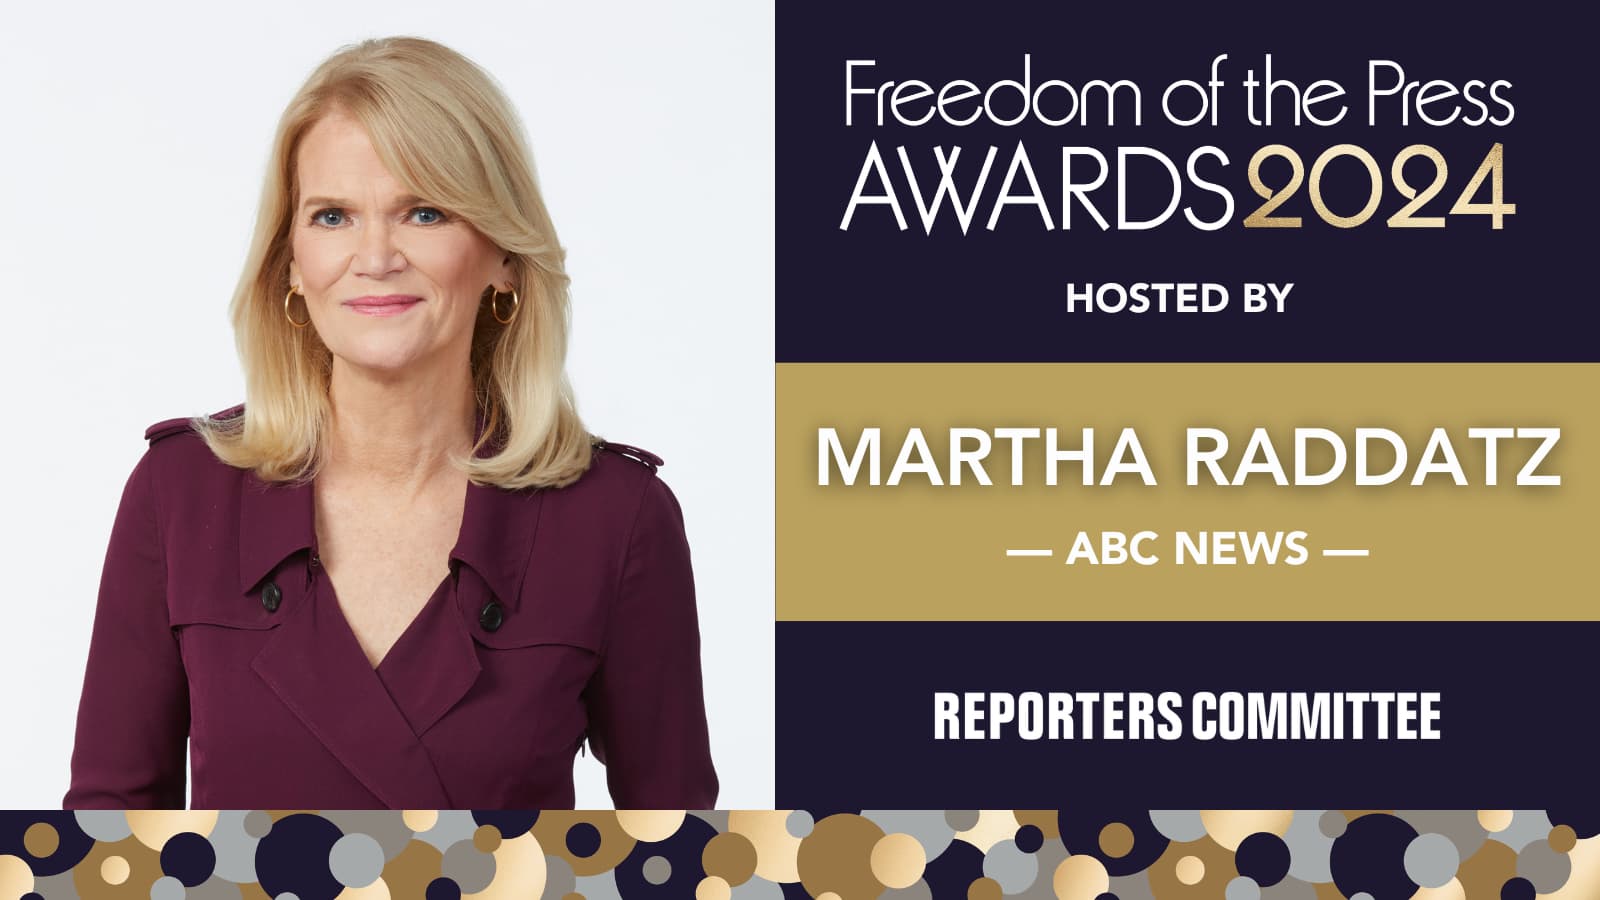 Headshot of ABC News' Martha Raddatz alongside image card for the 2024 Freedom of the Press Awards